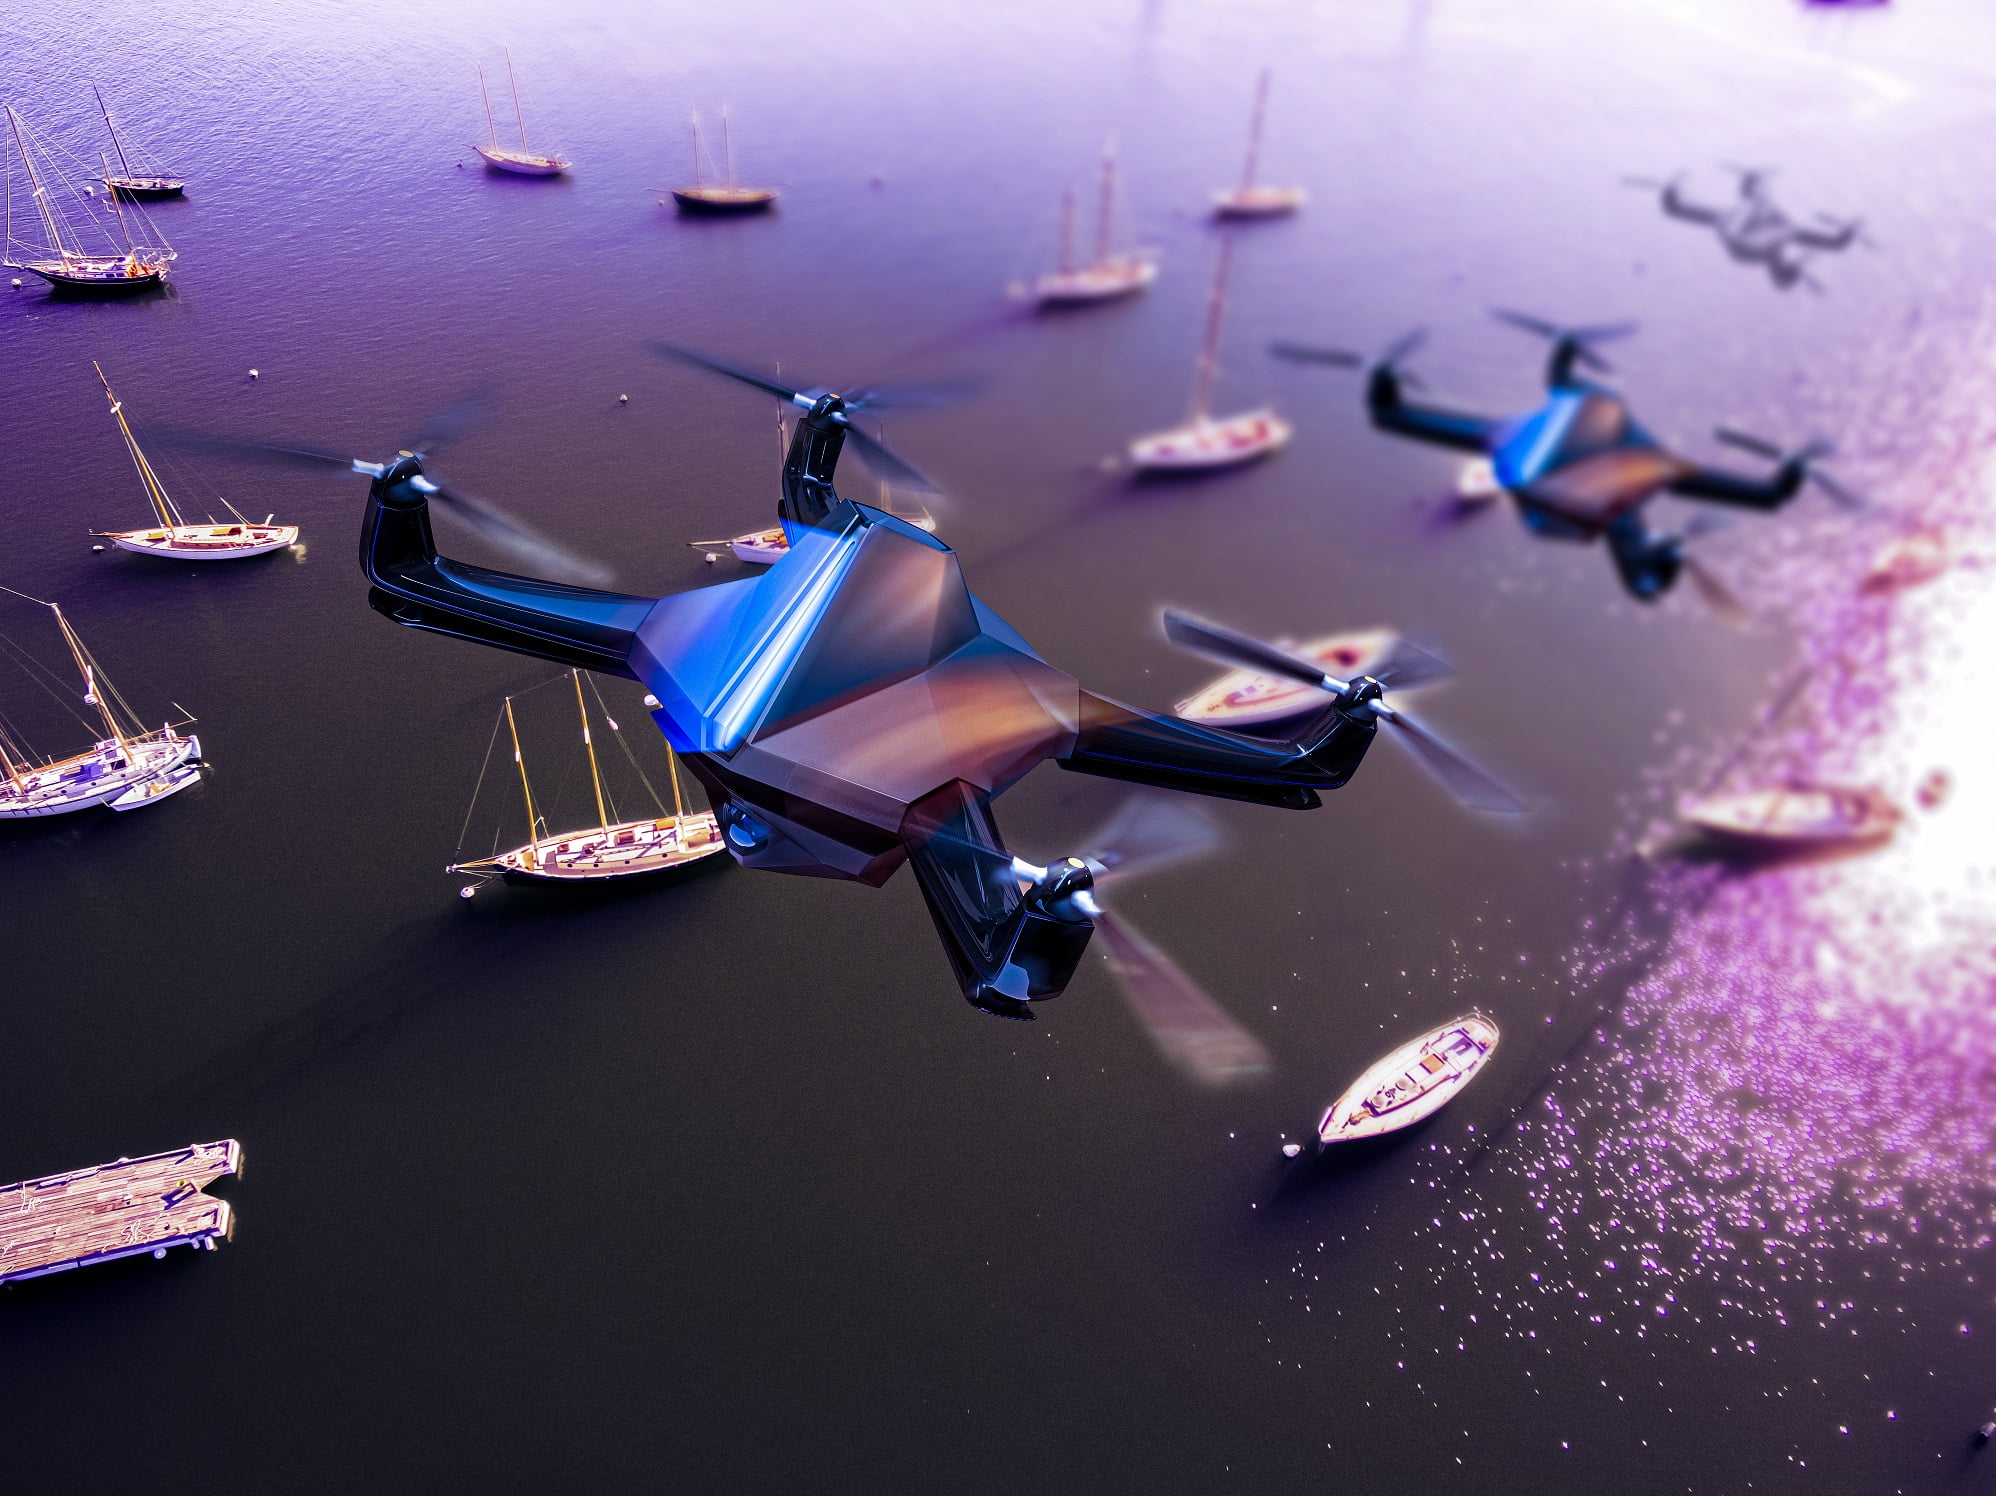 Drohnen-Challenge bietet über 3 Millionen US-Dollar Preisgeld